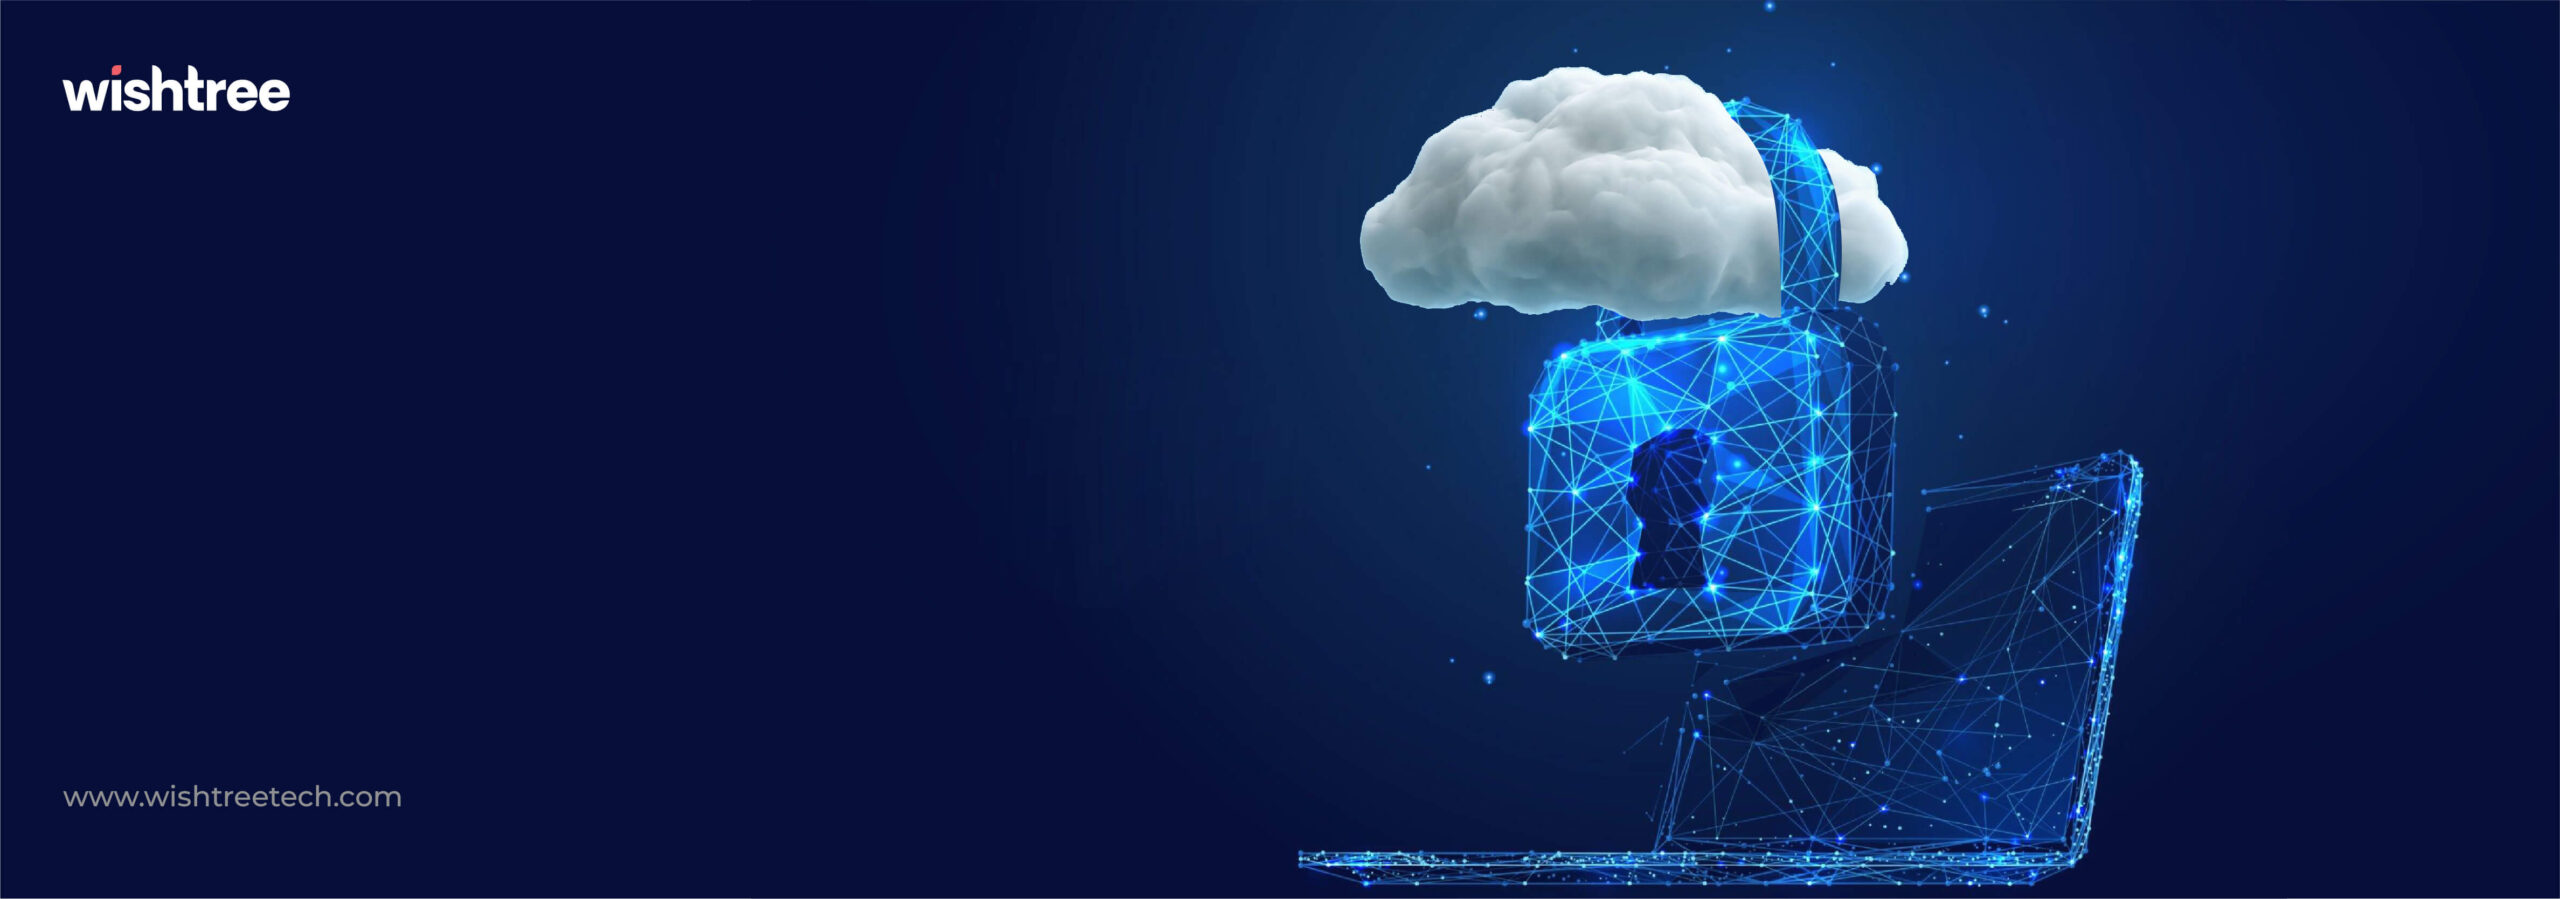 Enhance Your Enterprise Cloud Security